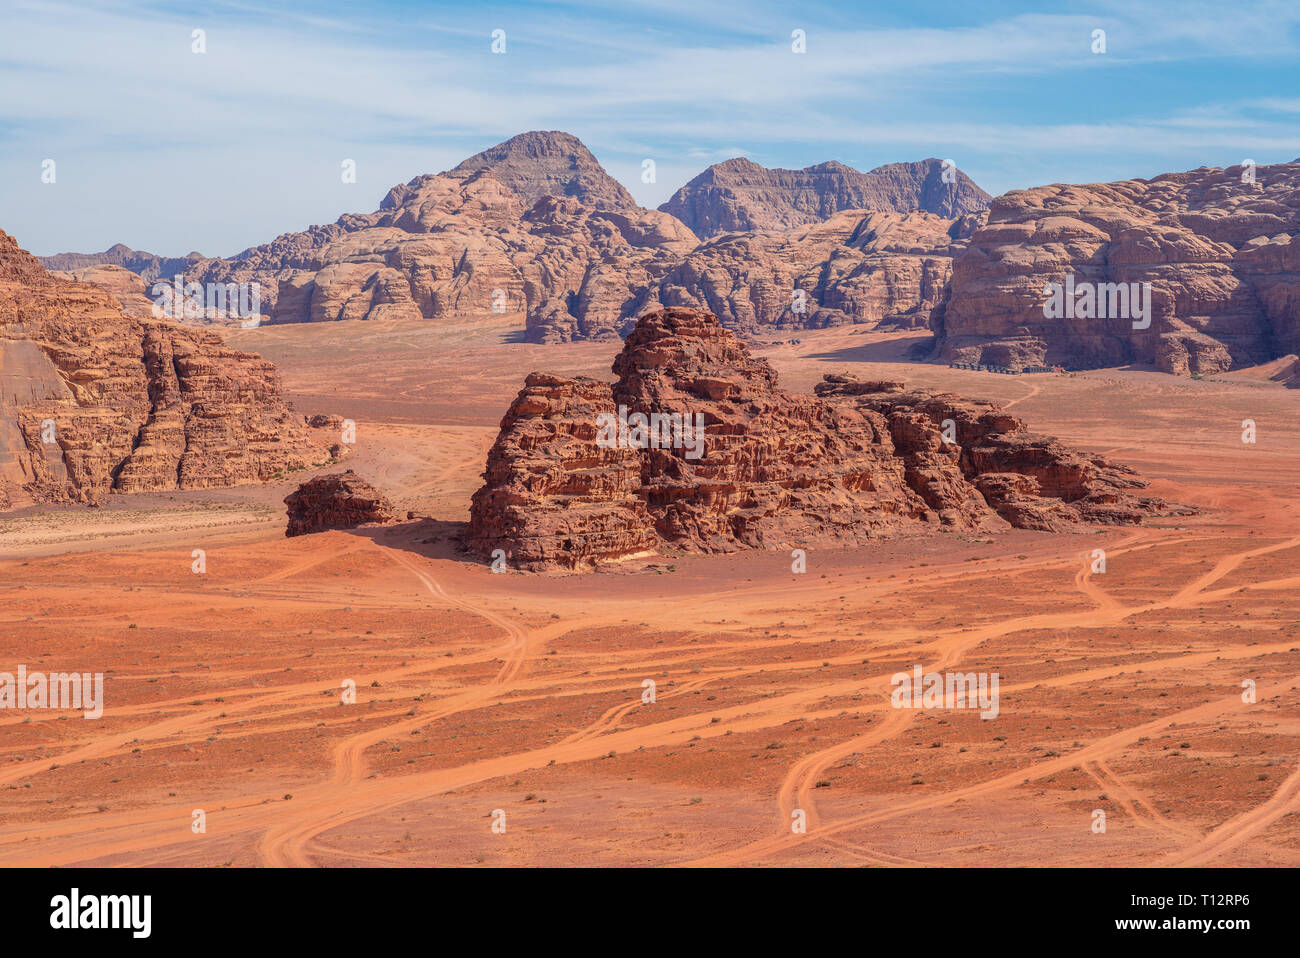 Le désert de Wadi Rum, ou la vallée de la Lune, en Jordanie Banque D'Images